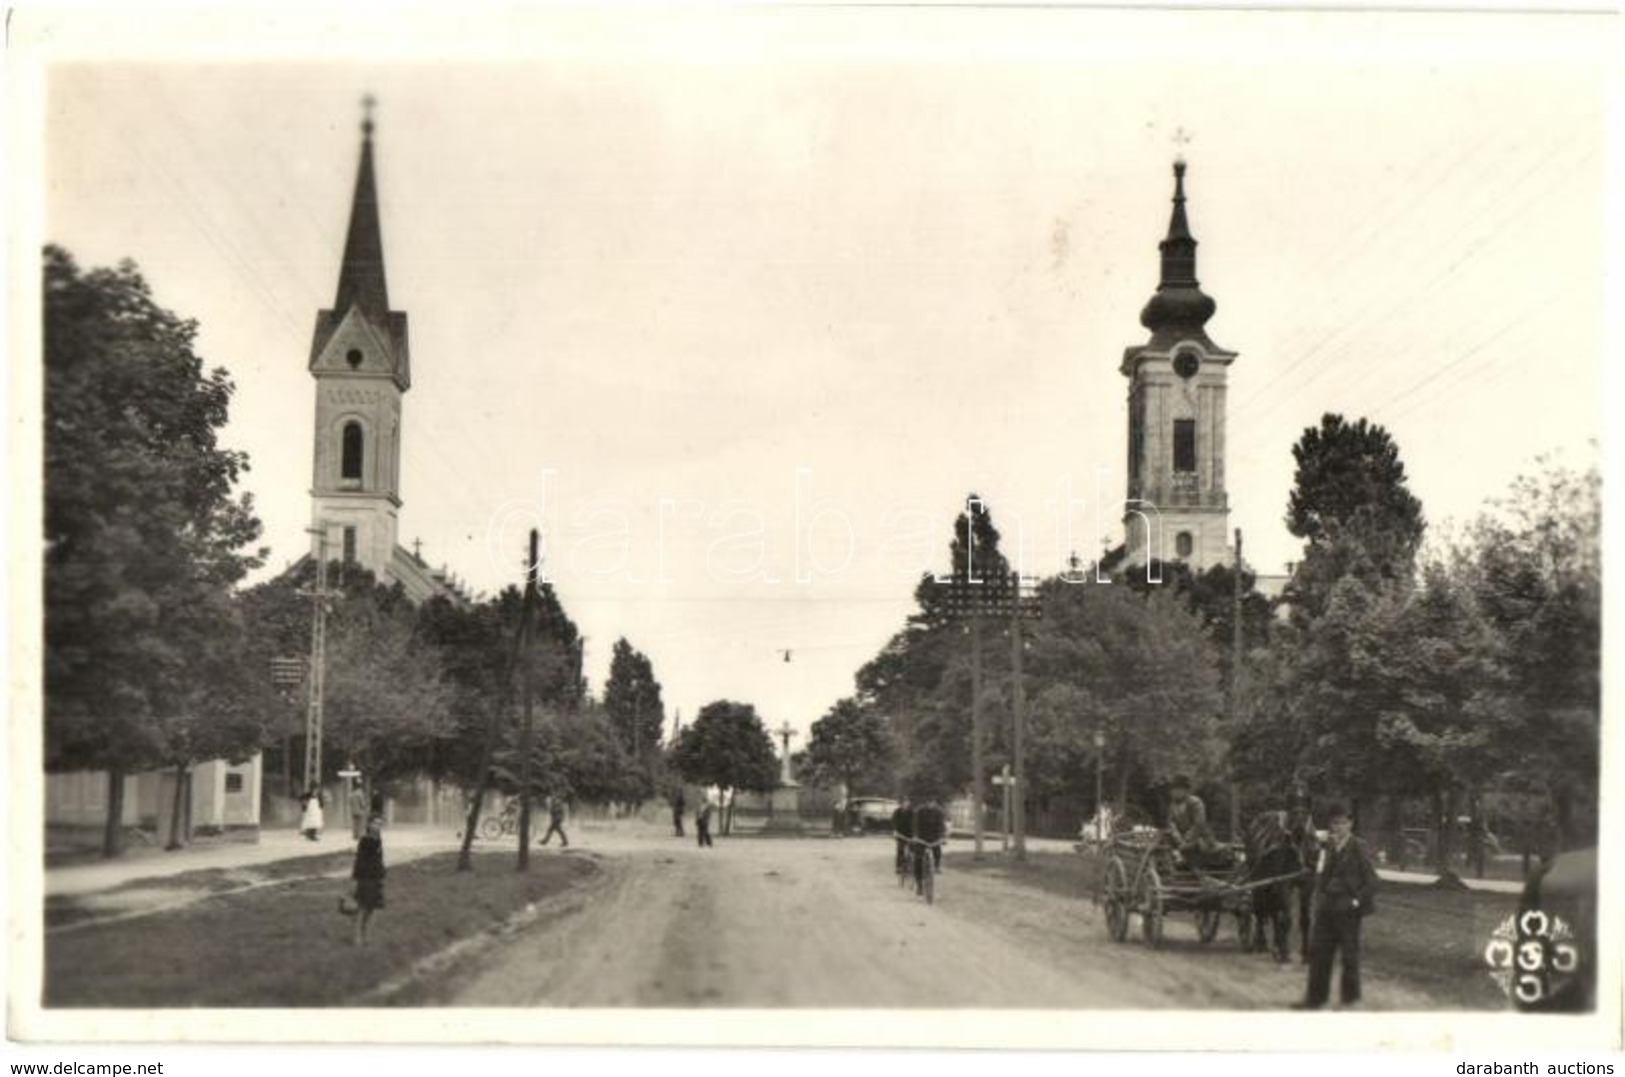 T2 1942 Zsablya, Zabalj; Templomok, Kerékpárosok, Autó / Churches, Automobile, Men On Bicycles - Unclassified